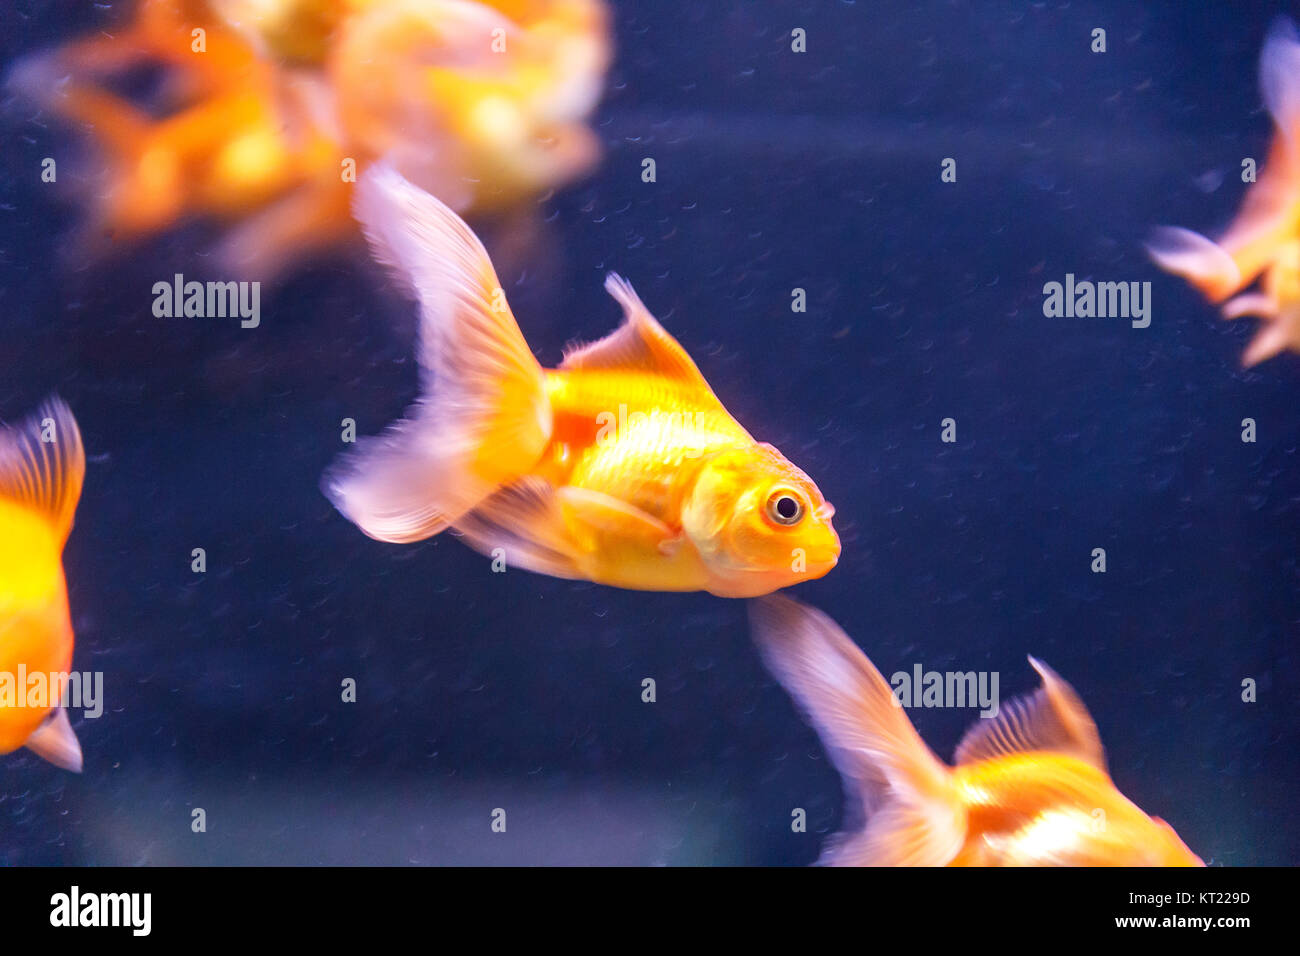 Orange parrot fish swimming in aquarium Stock Photo